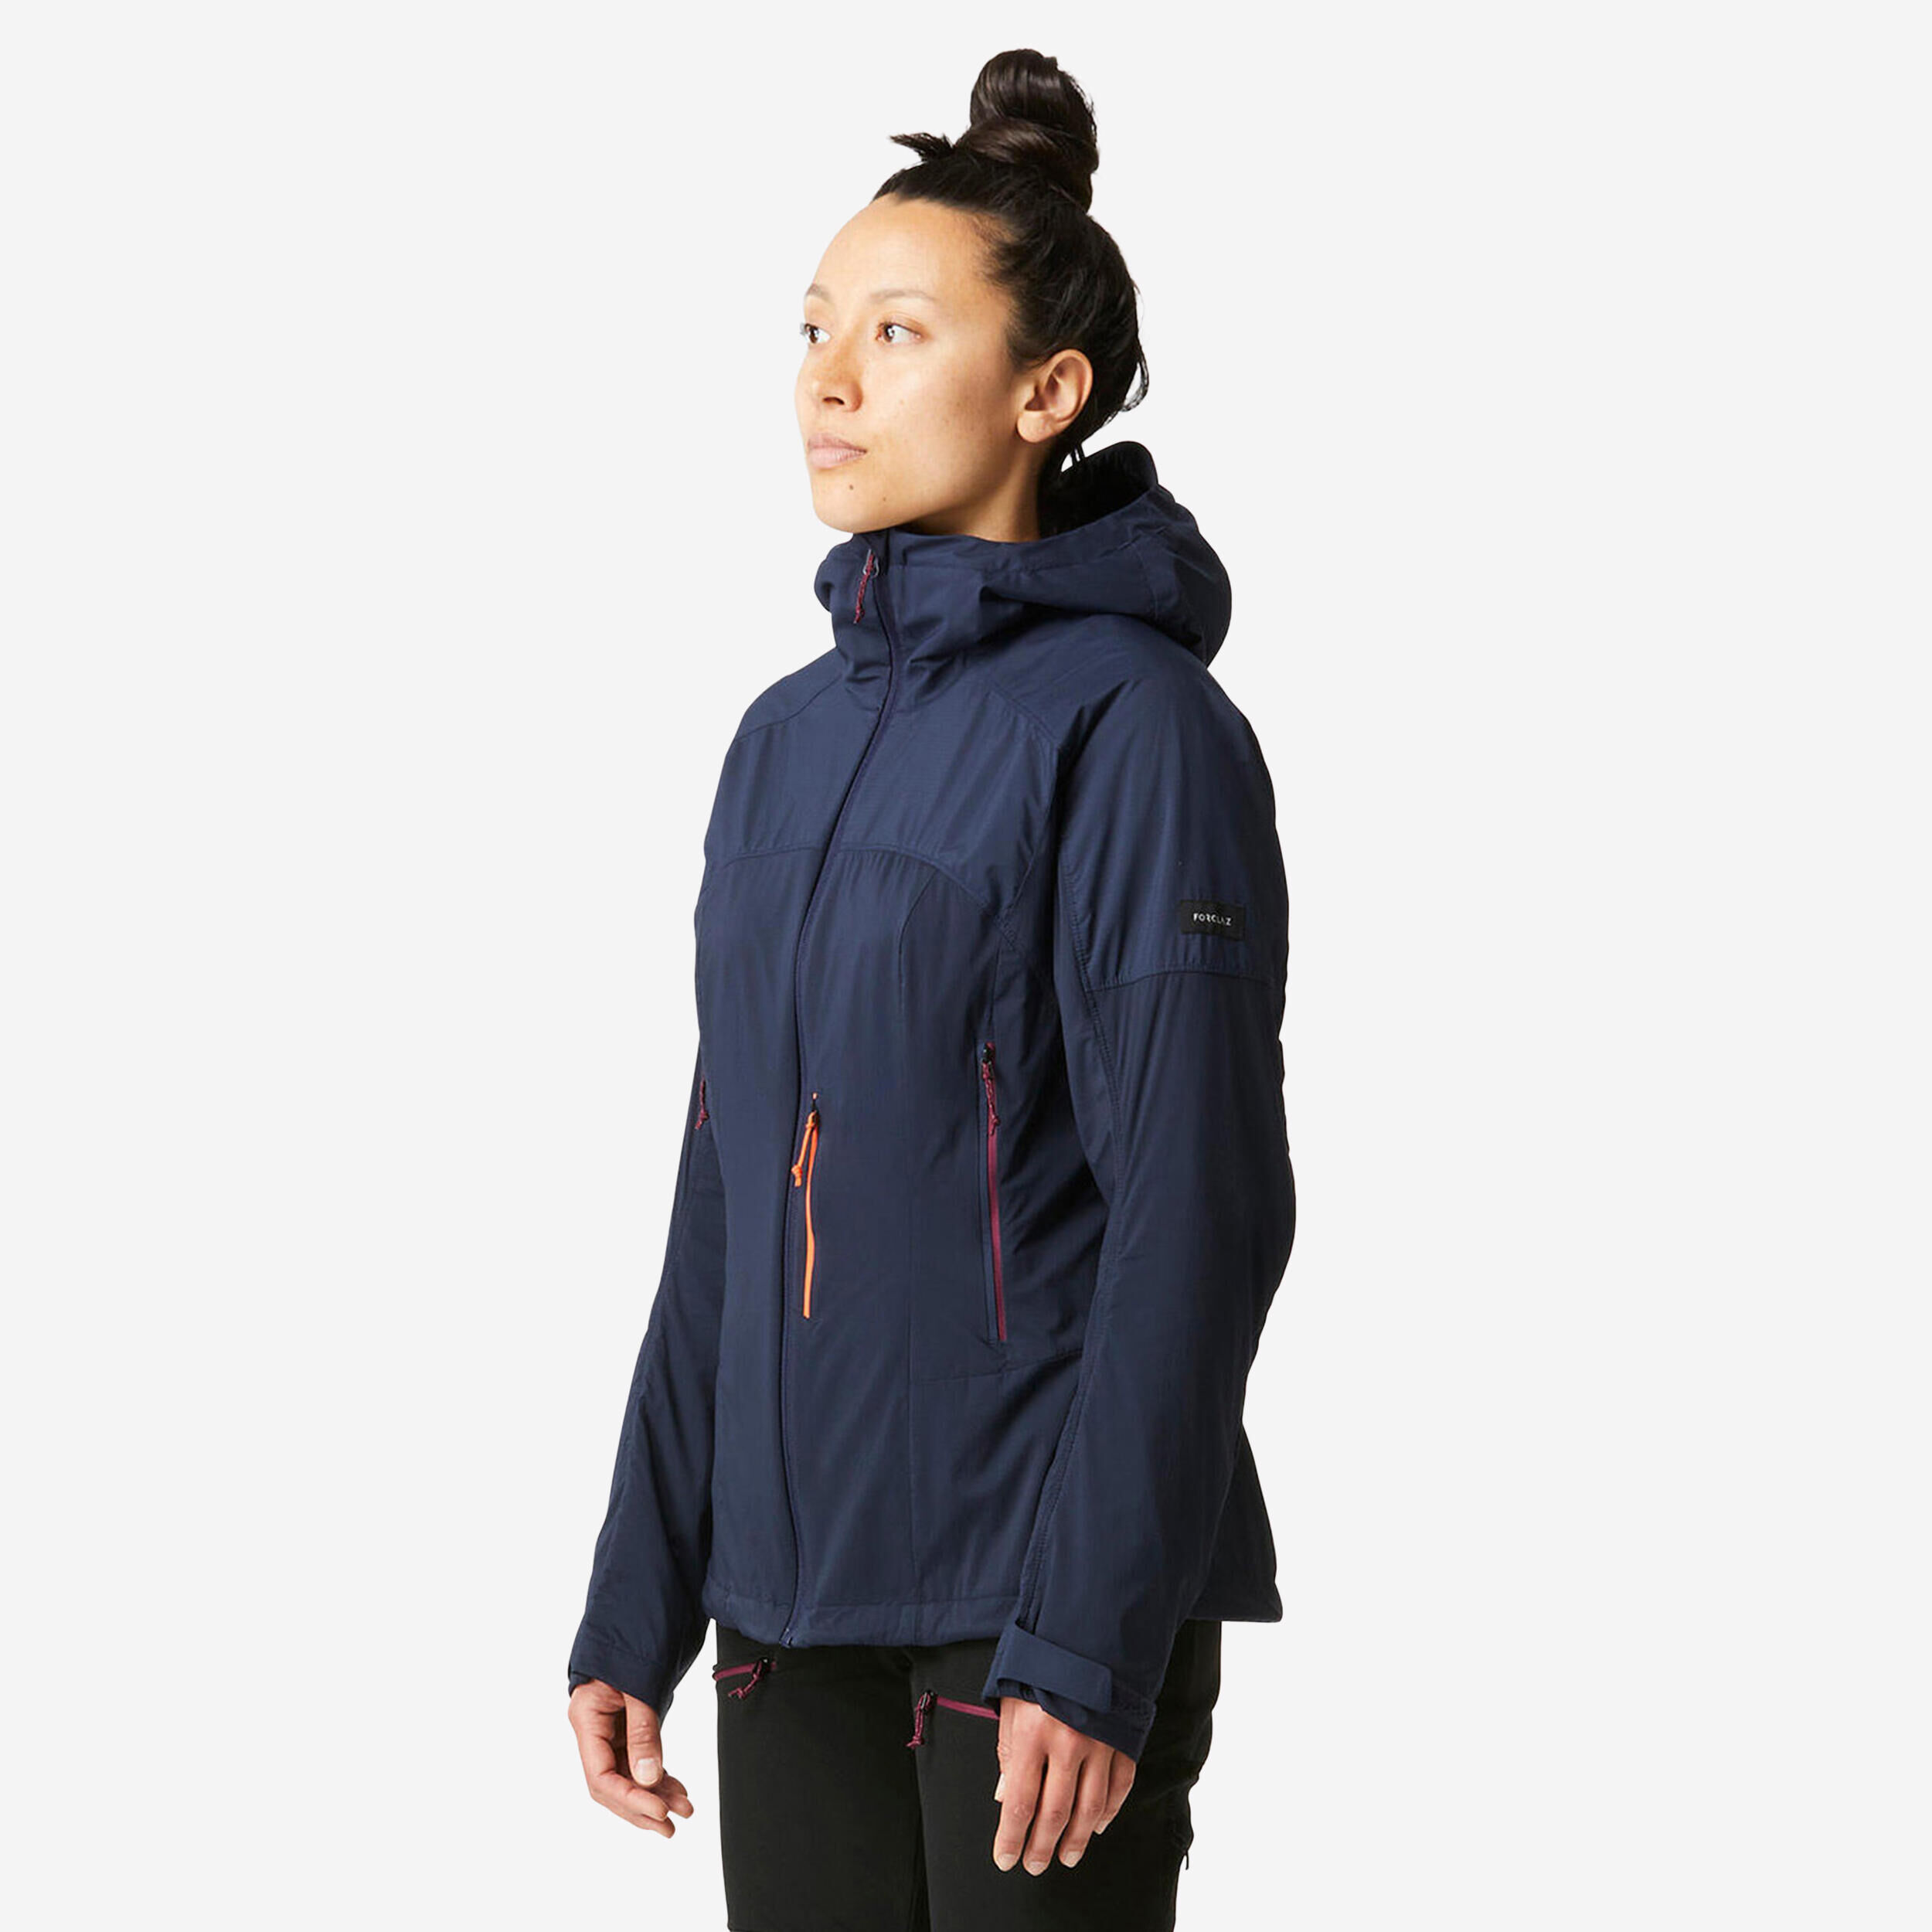 FORCLAZ Women’s mountain trekking windbreaker softshell jacket - MT900 navy blue